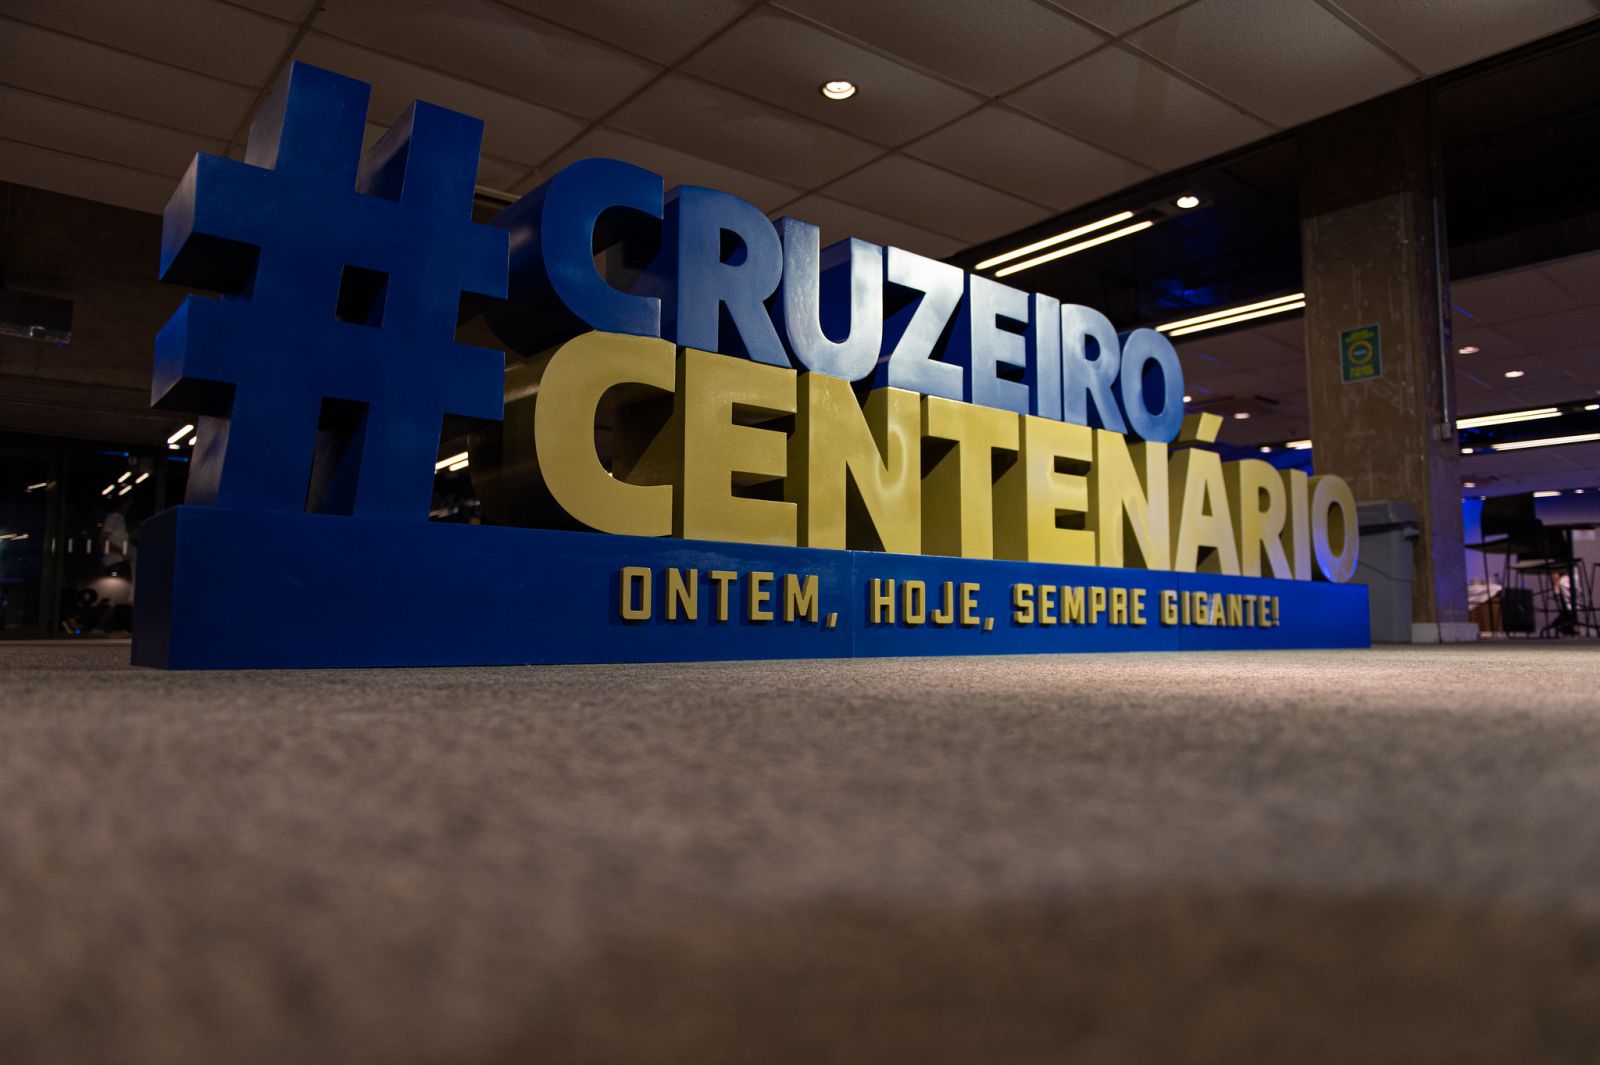 Entre royalties e taxas de licenciamento, Cruzeiro fatura cerca de R$ 1 milhão em janeiro com a marca Centenário